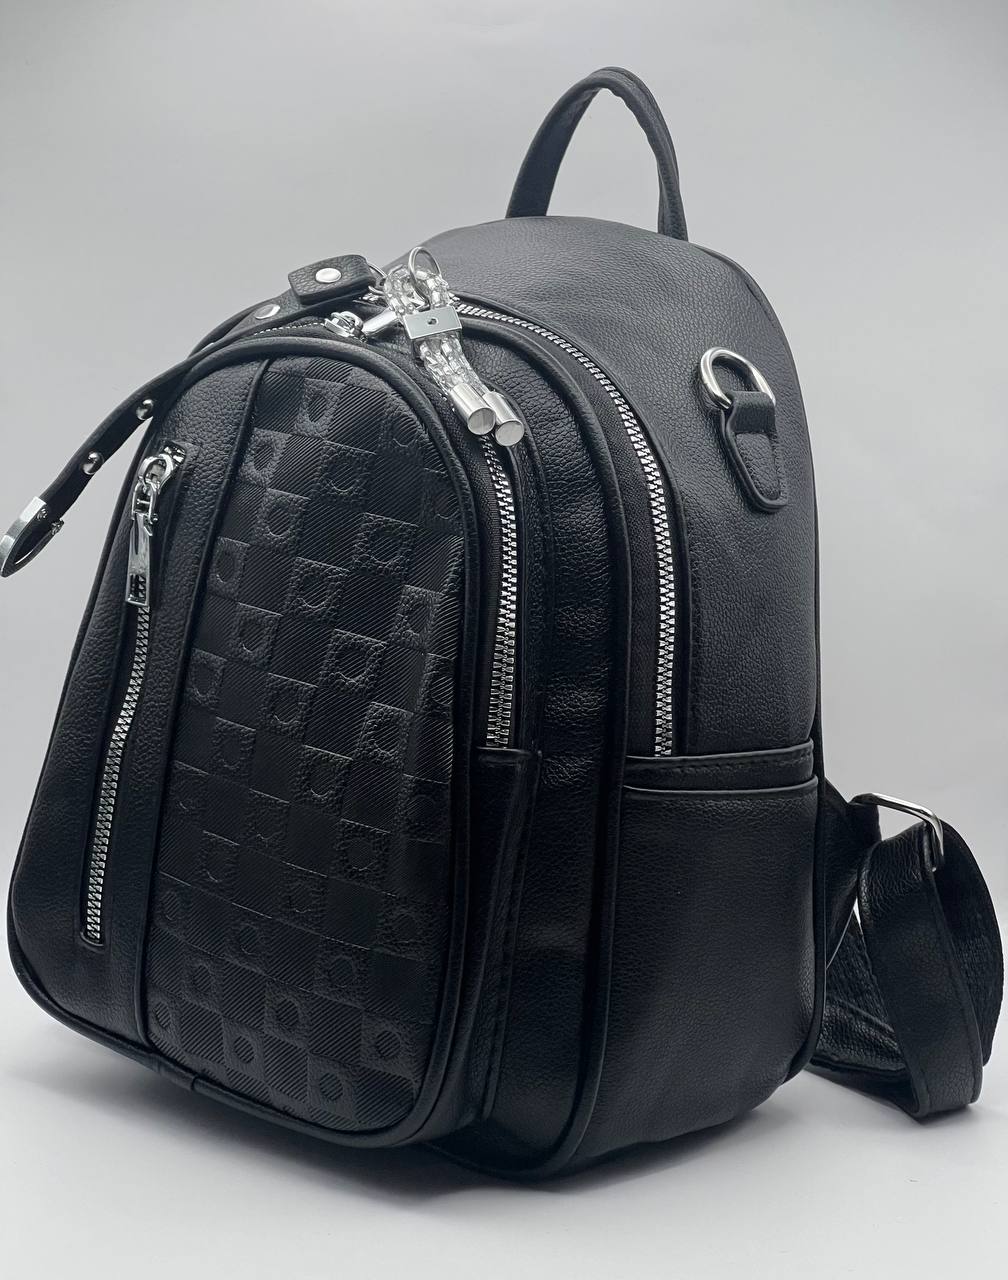 Сумка-рюкзак женская SunGold Р-92001 черная, 27х22х12 см